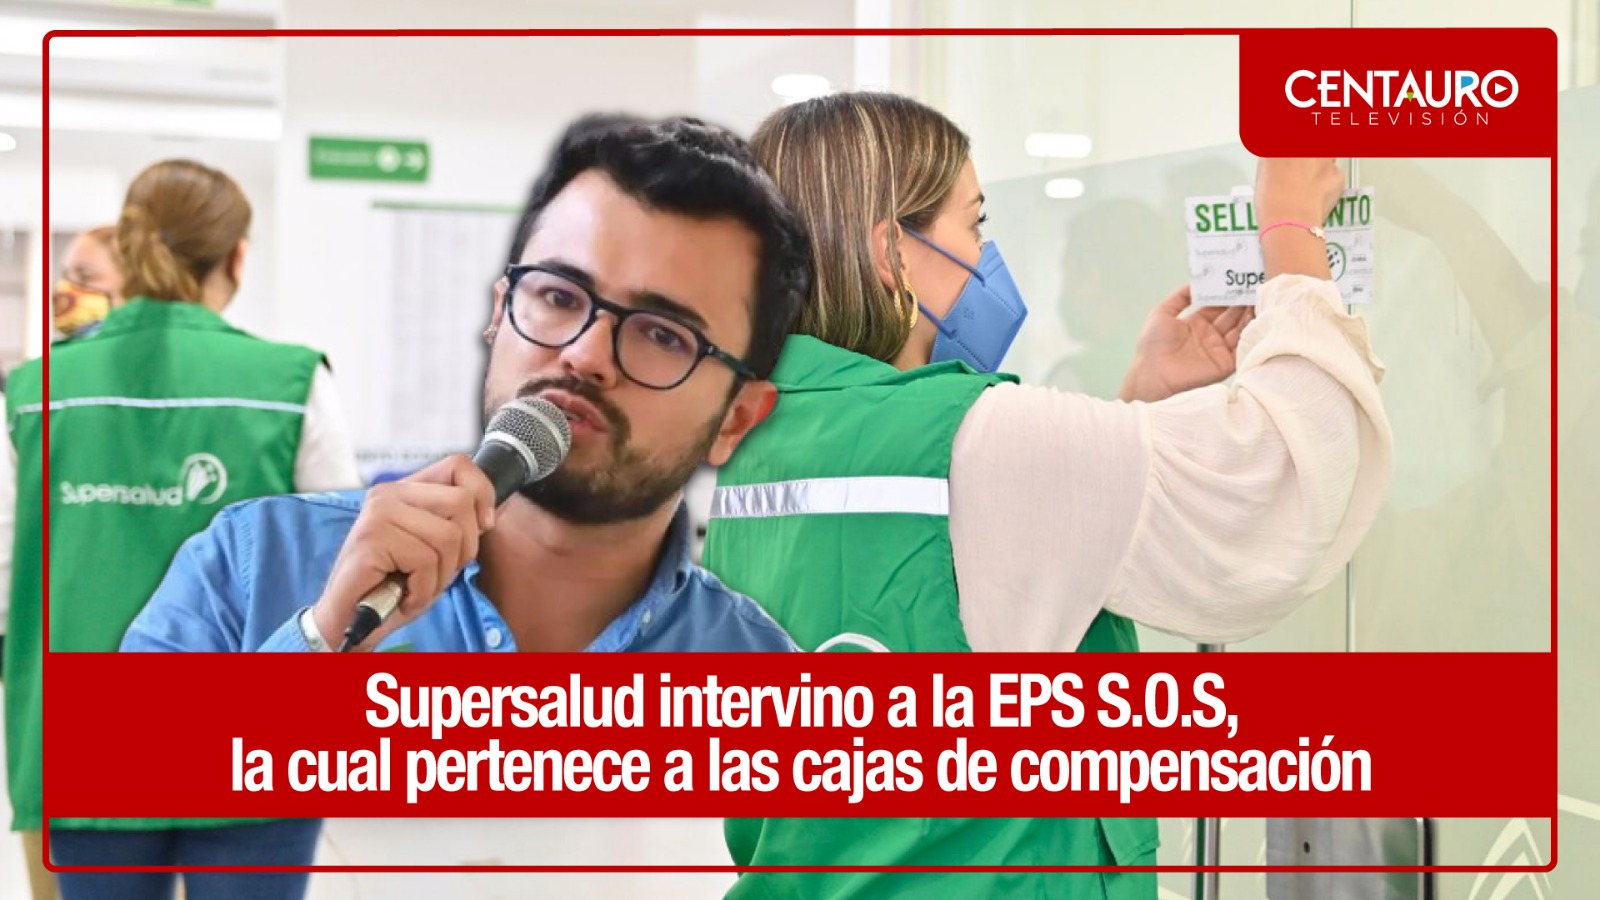 Supersalud intervino a la EPS S.O.S, la cual pertenece a las cajas de compensación